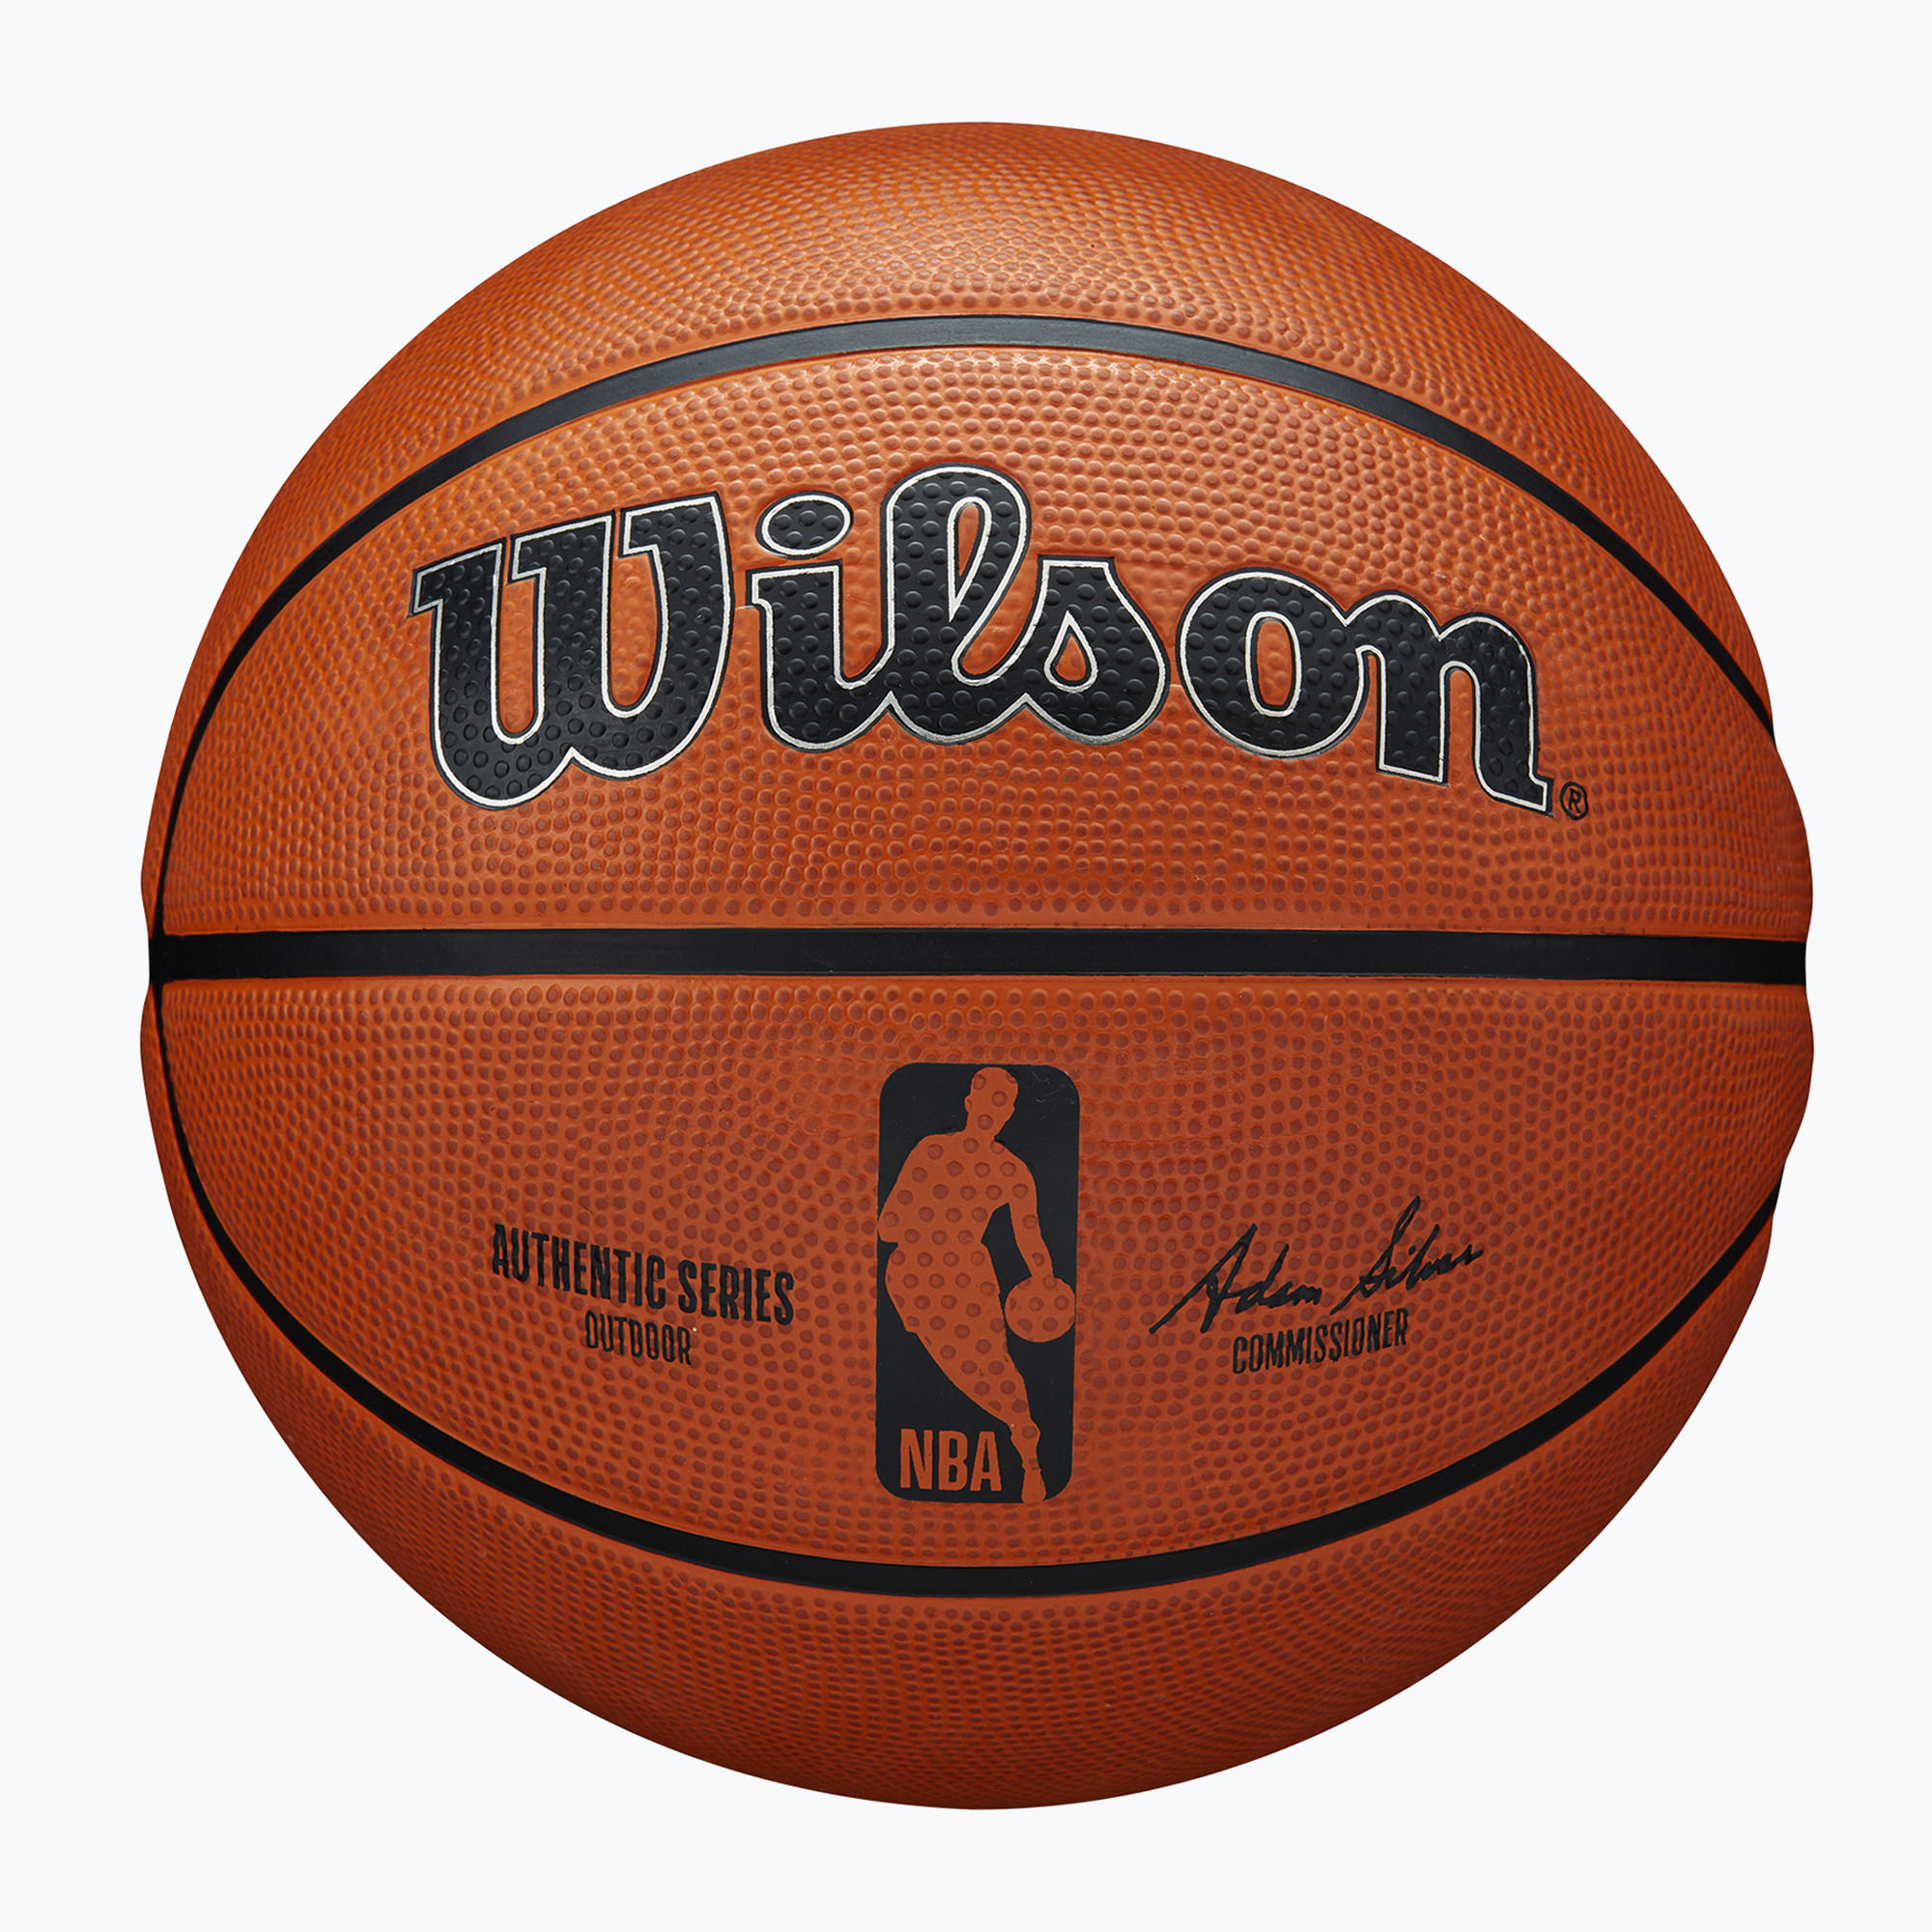 Уилсън NBA автентична серия баскетбол на открито WTB7300XB07 размер 7